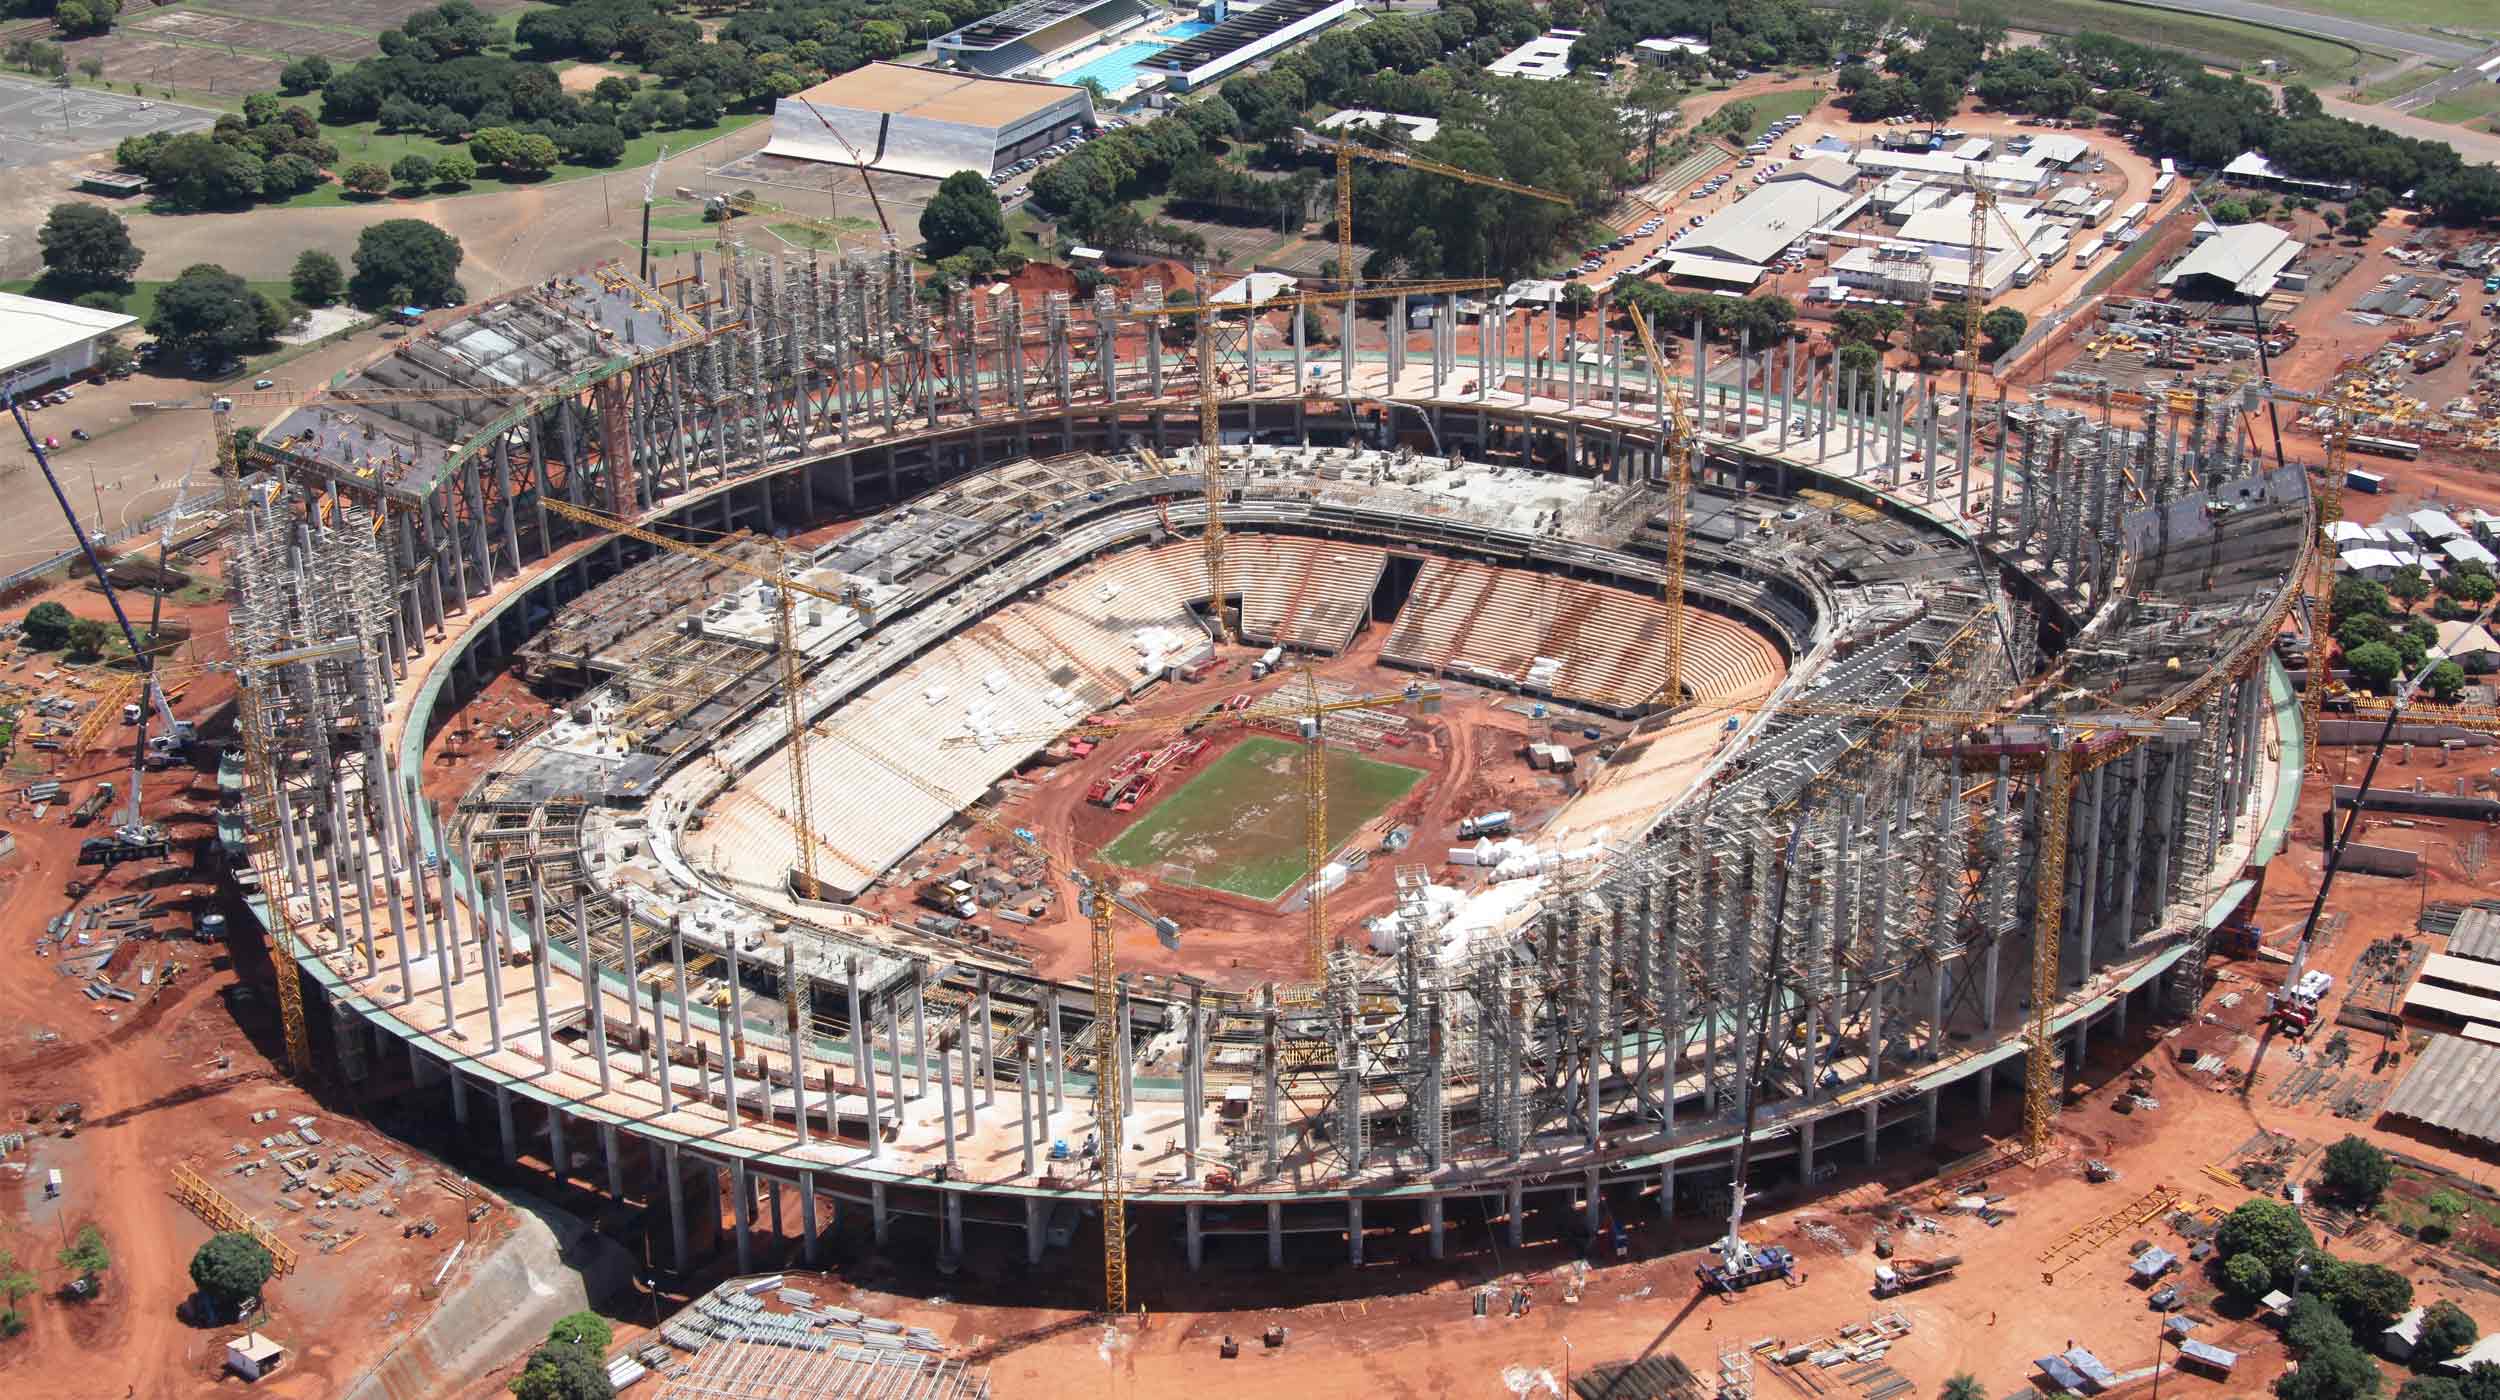 El más conocido como Mané Garrincha, será una de las sedes principales del Mundial de fútbol de 2014.